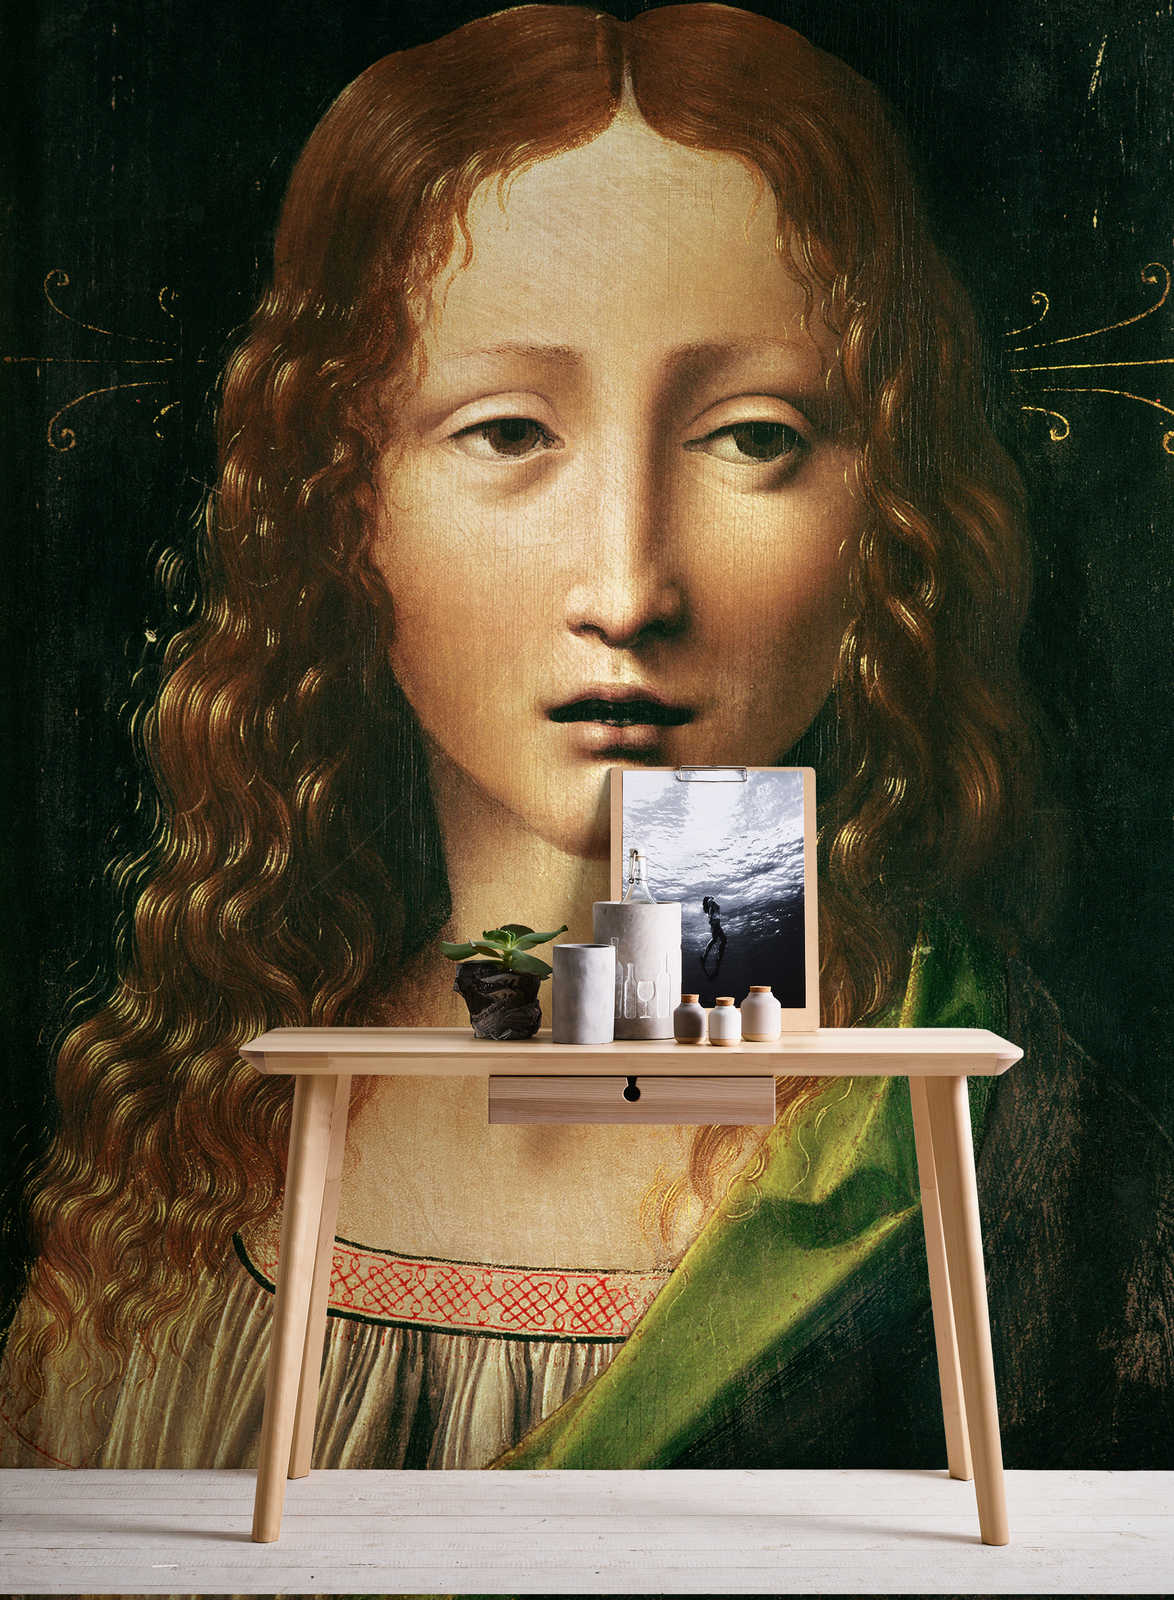             Hoofd van de Verlosser" muurschildering van Leonardo da Vinci
        